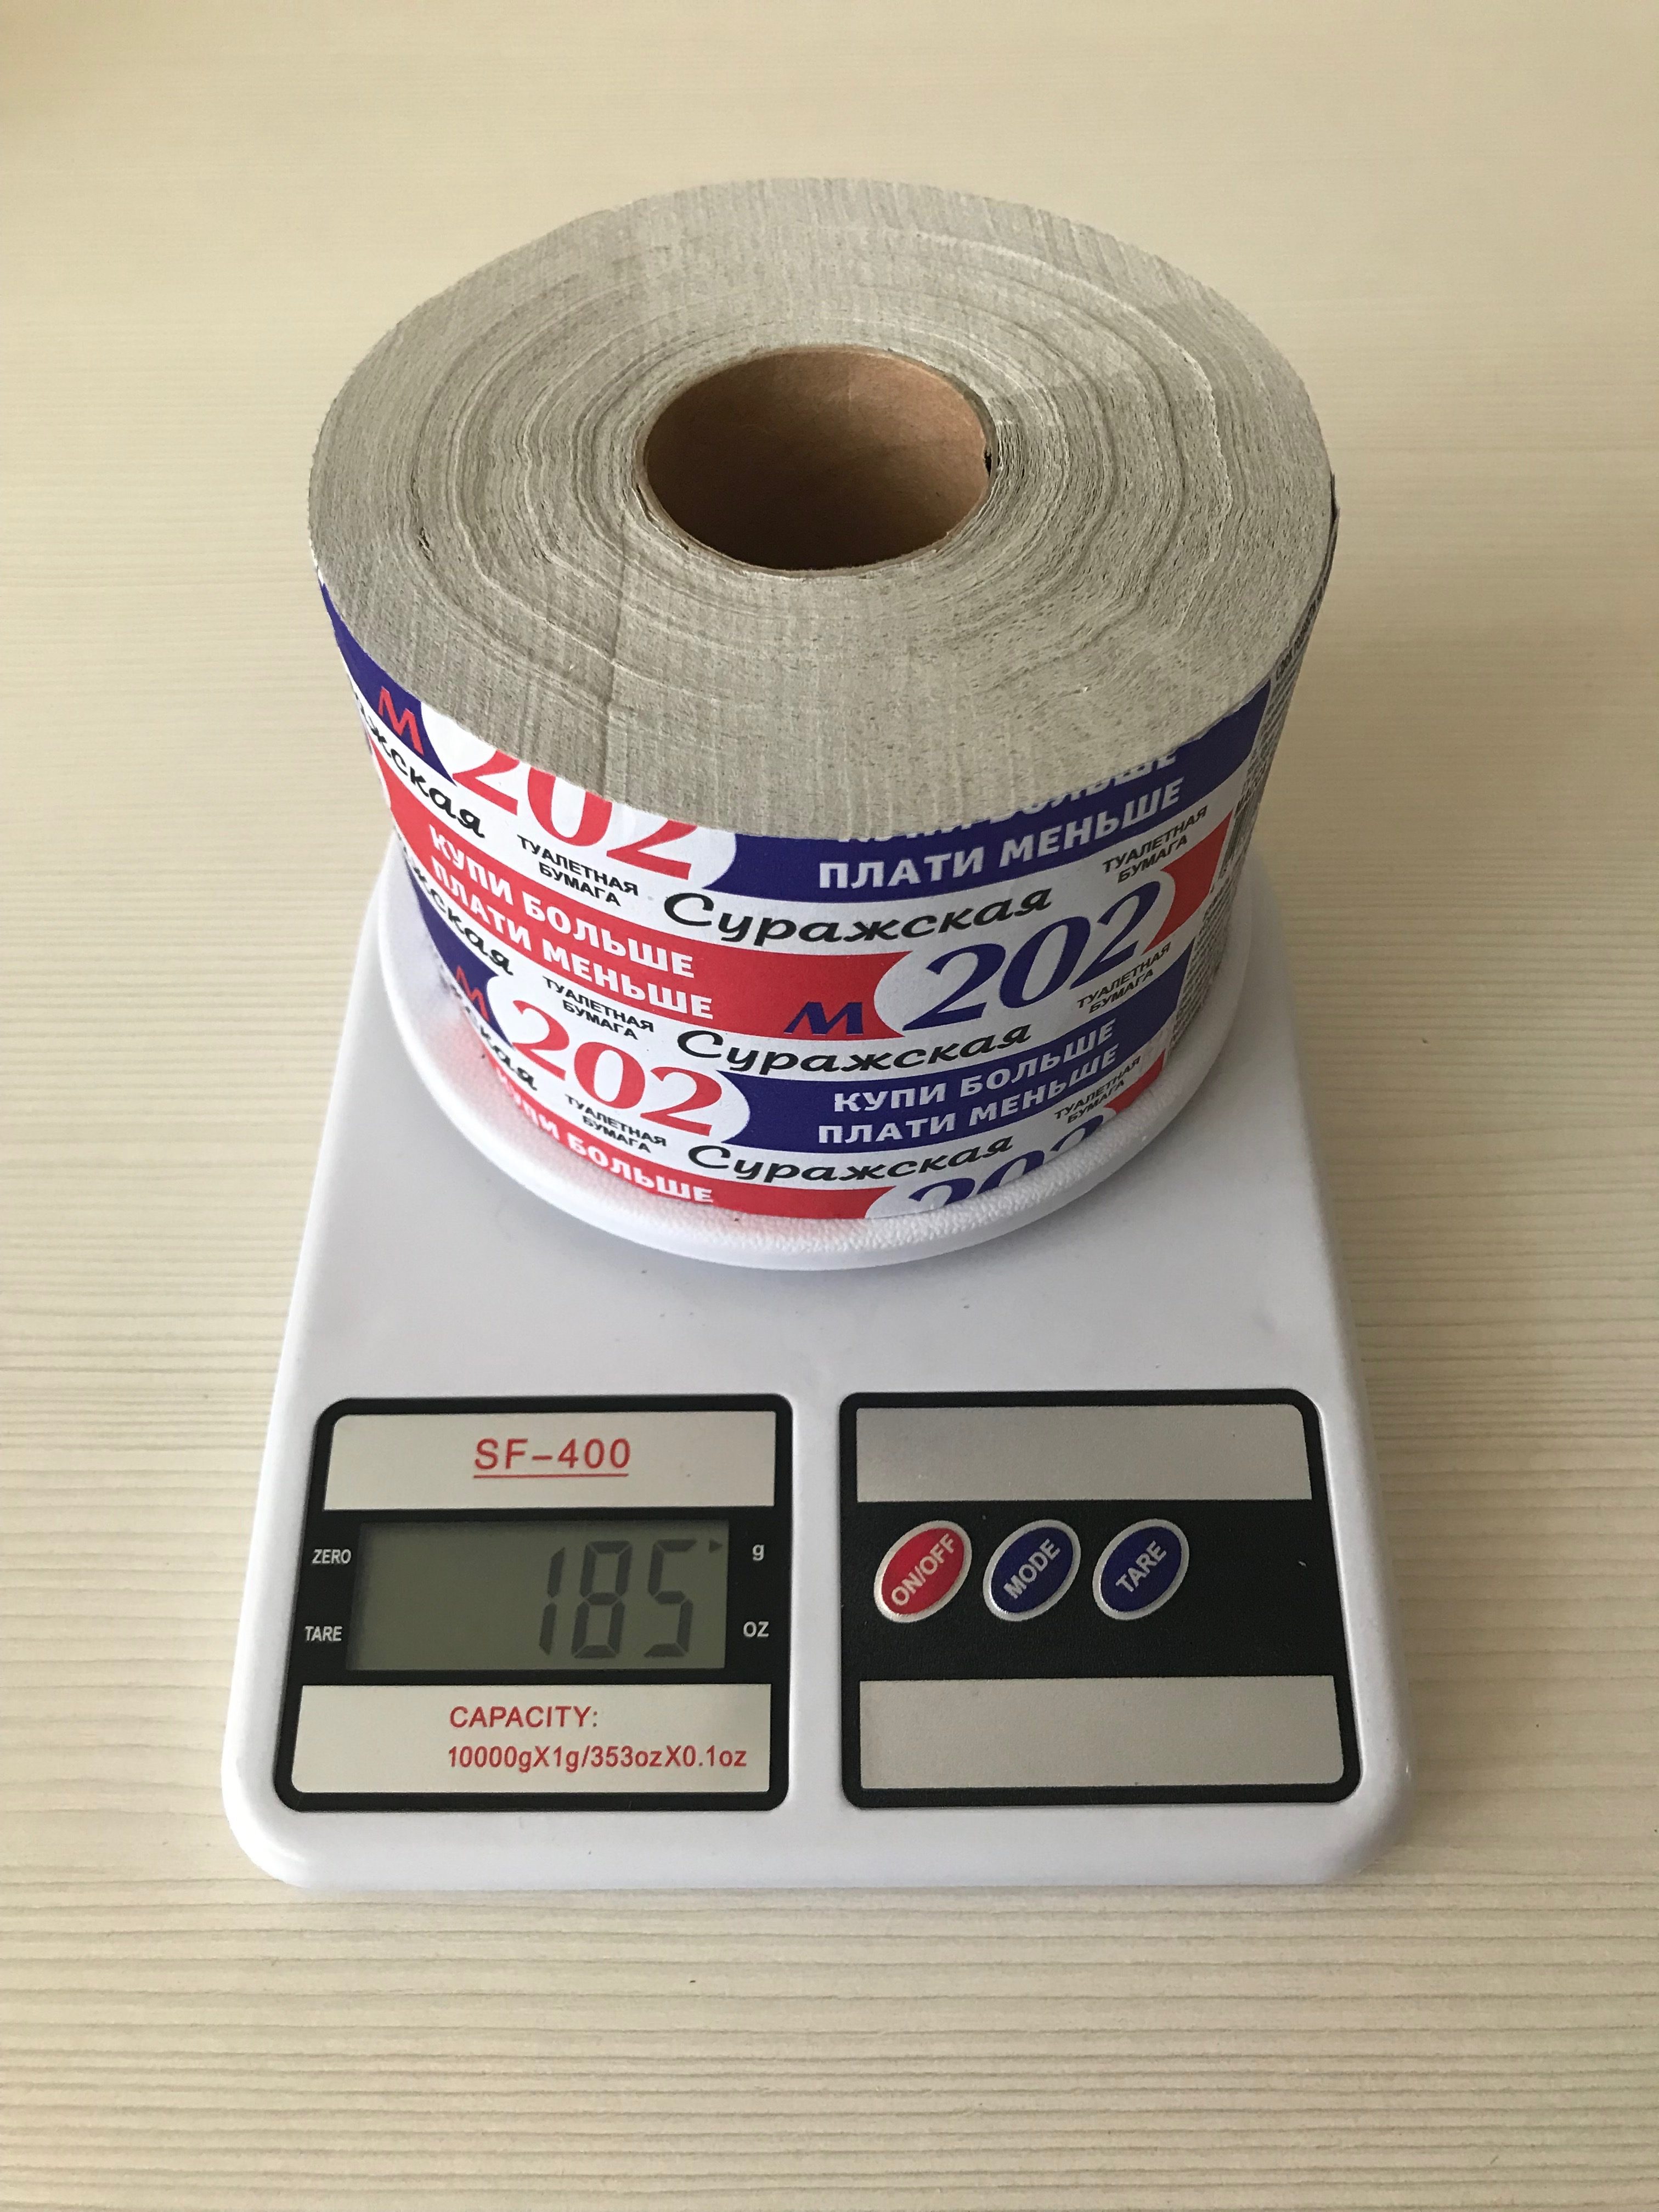 Сколько весит рулон туалетной бумаги?